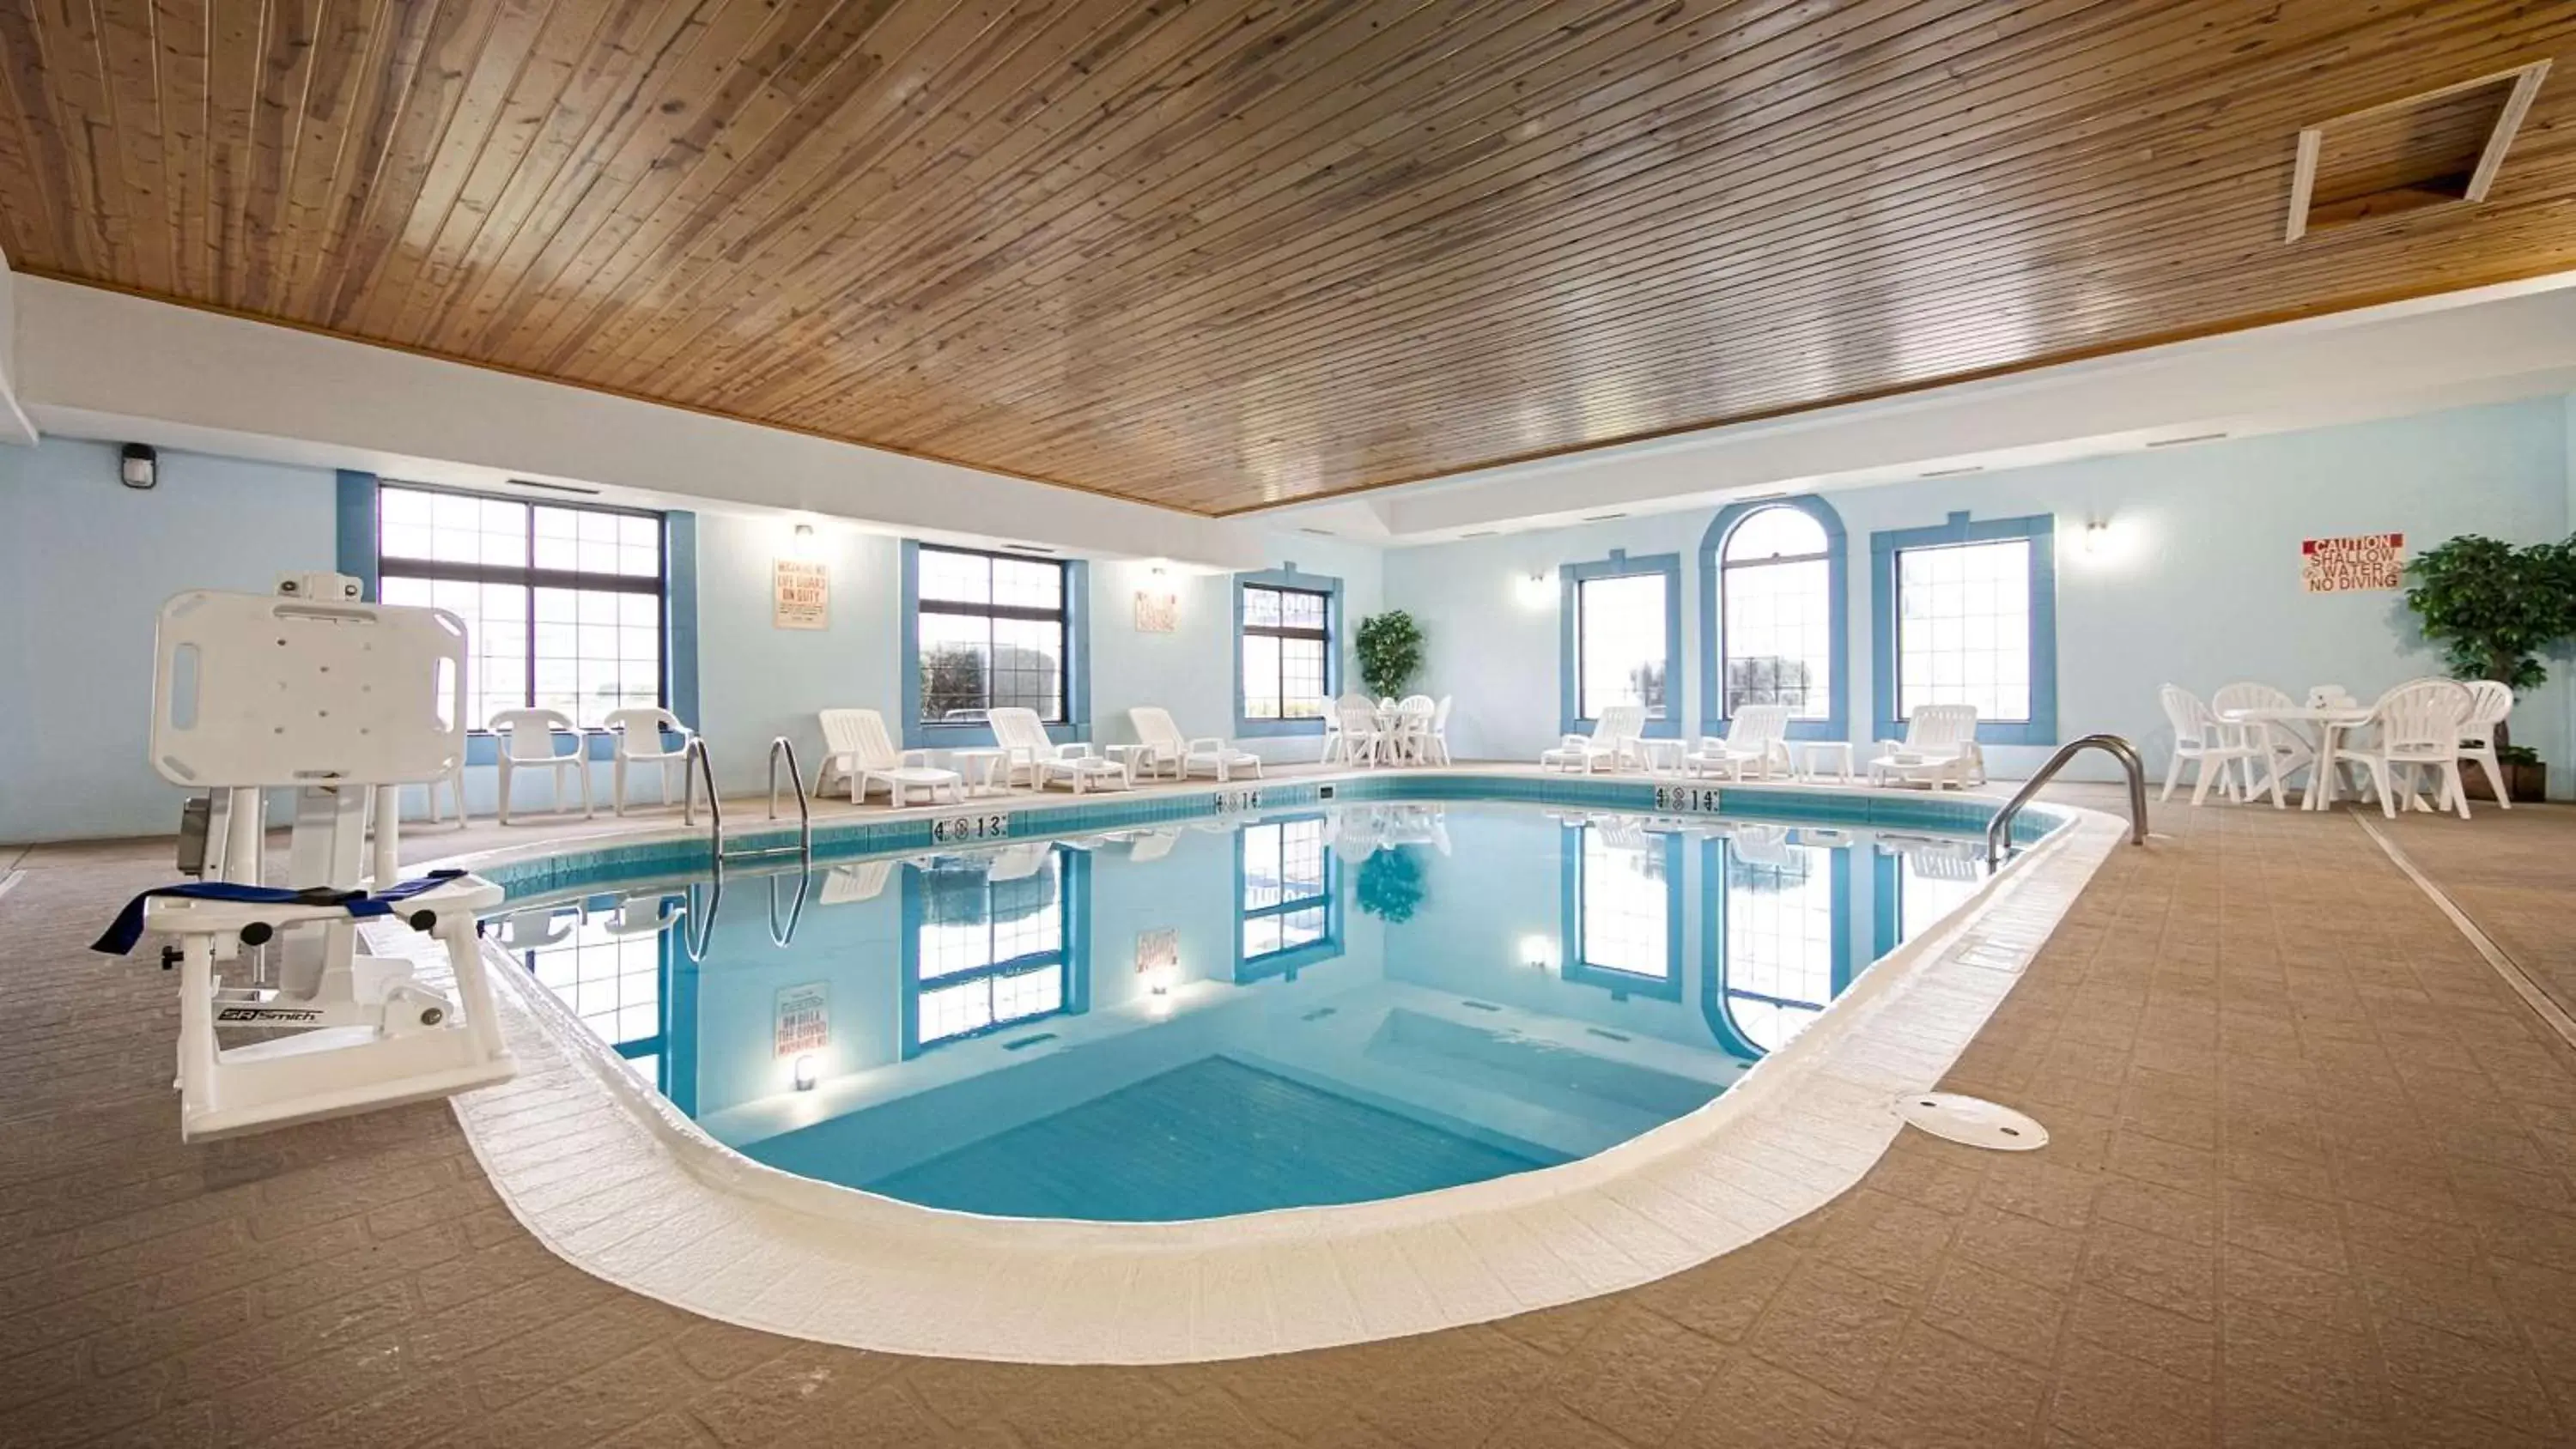 On site, Swimming Pool in Best Western Pontiac Inn